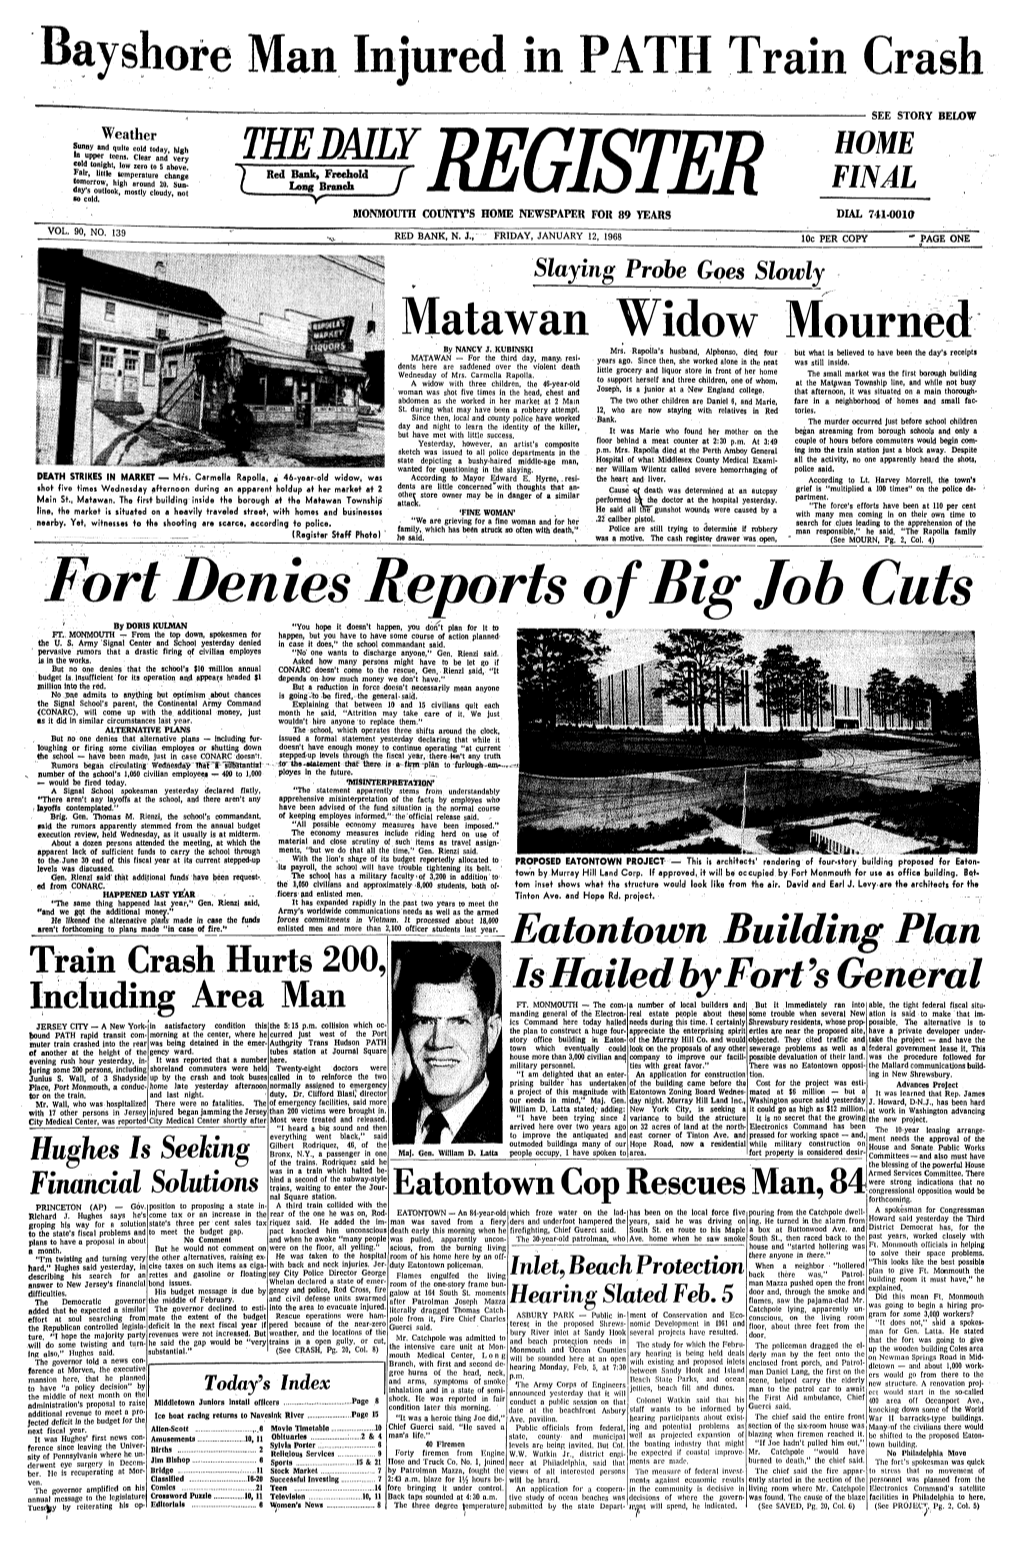 Fort Denies Reports of Big Job Cuts